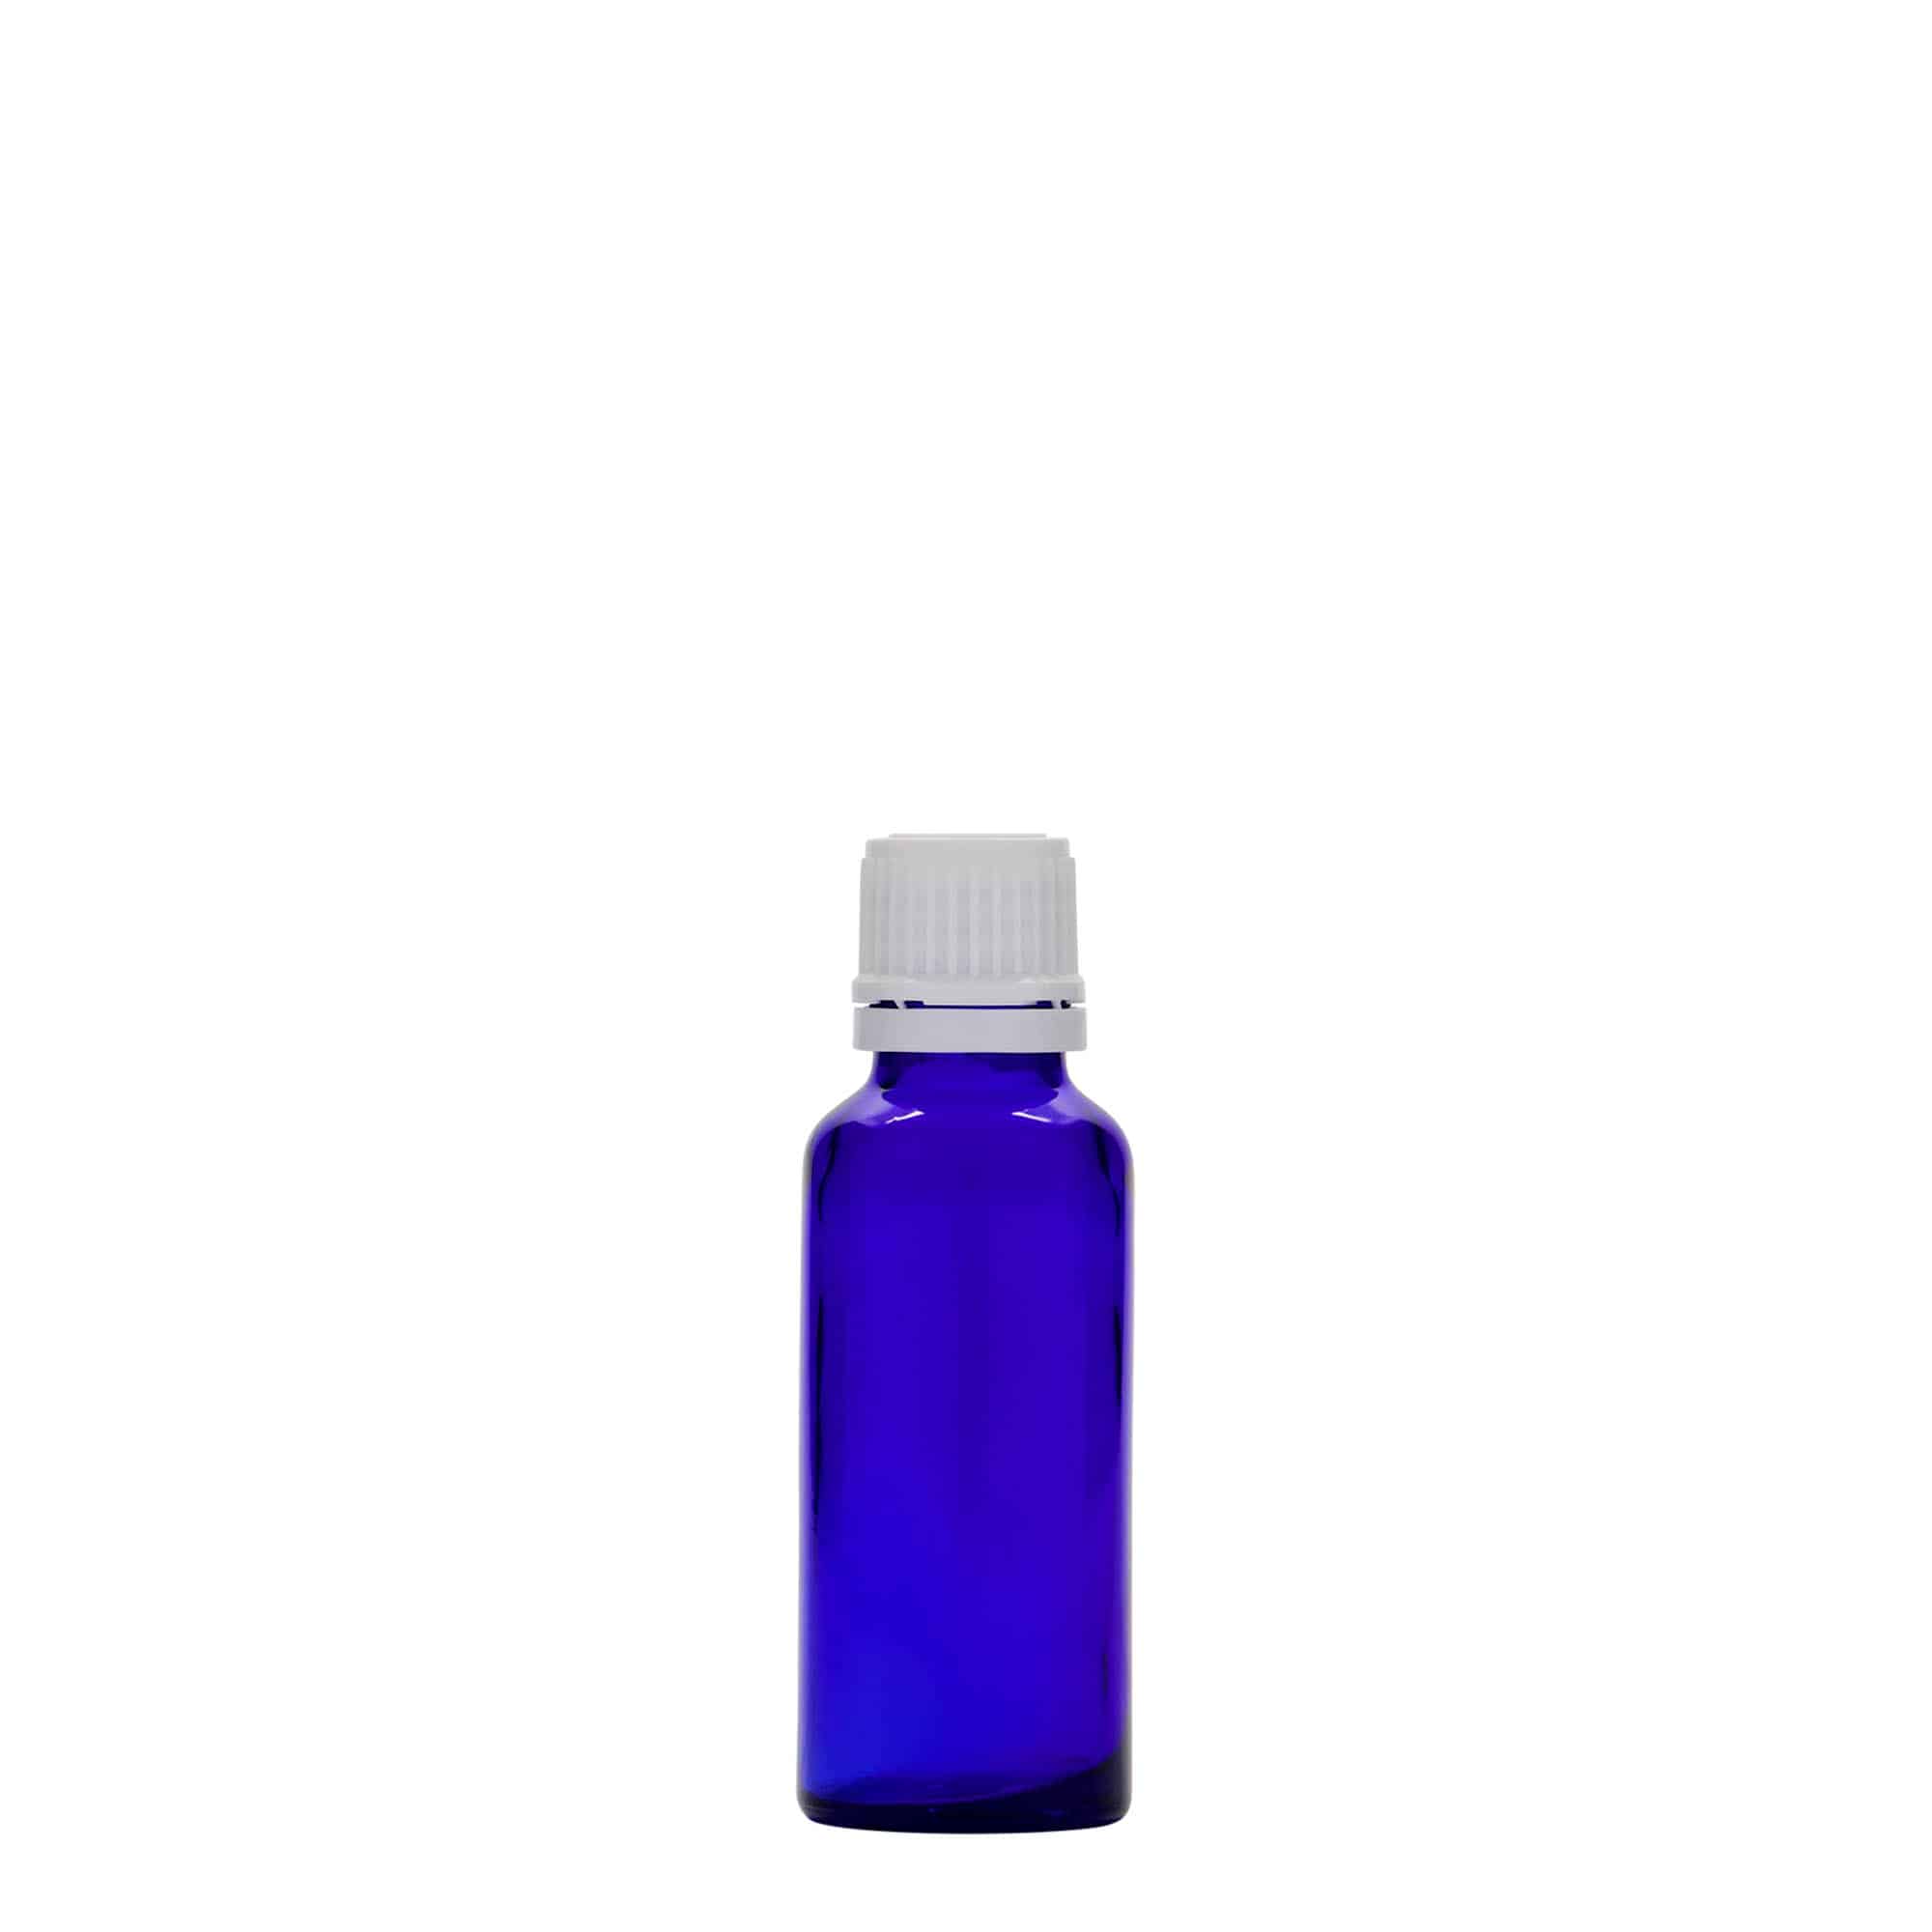 Lékovka 30 ml, sklo, královská modř, ústí: DIN 18